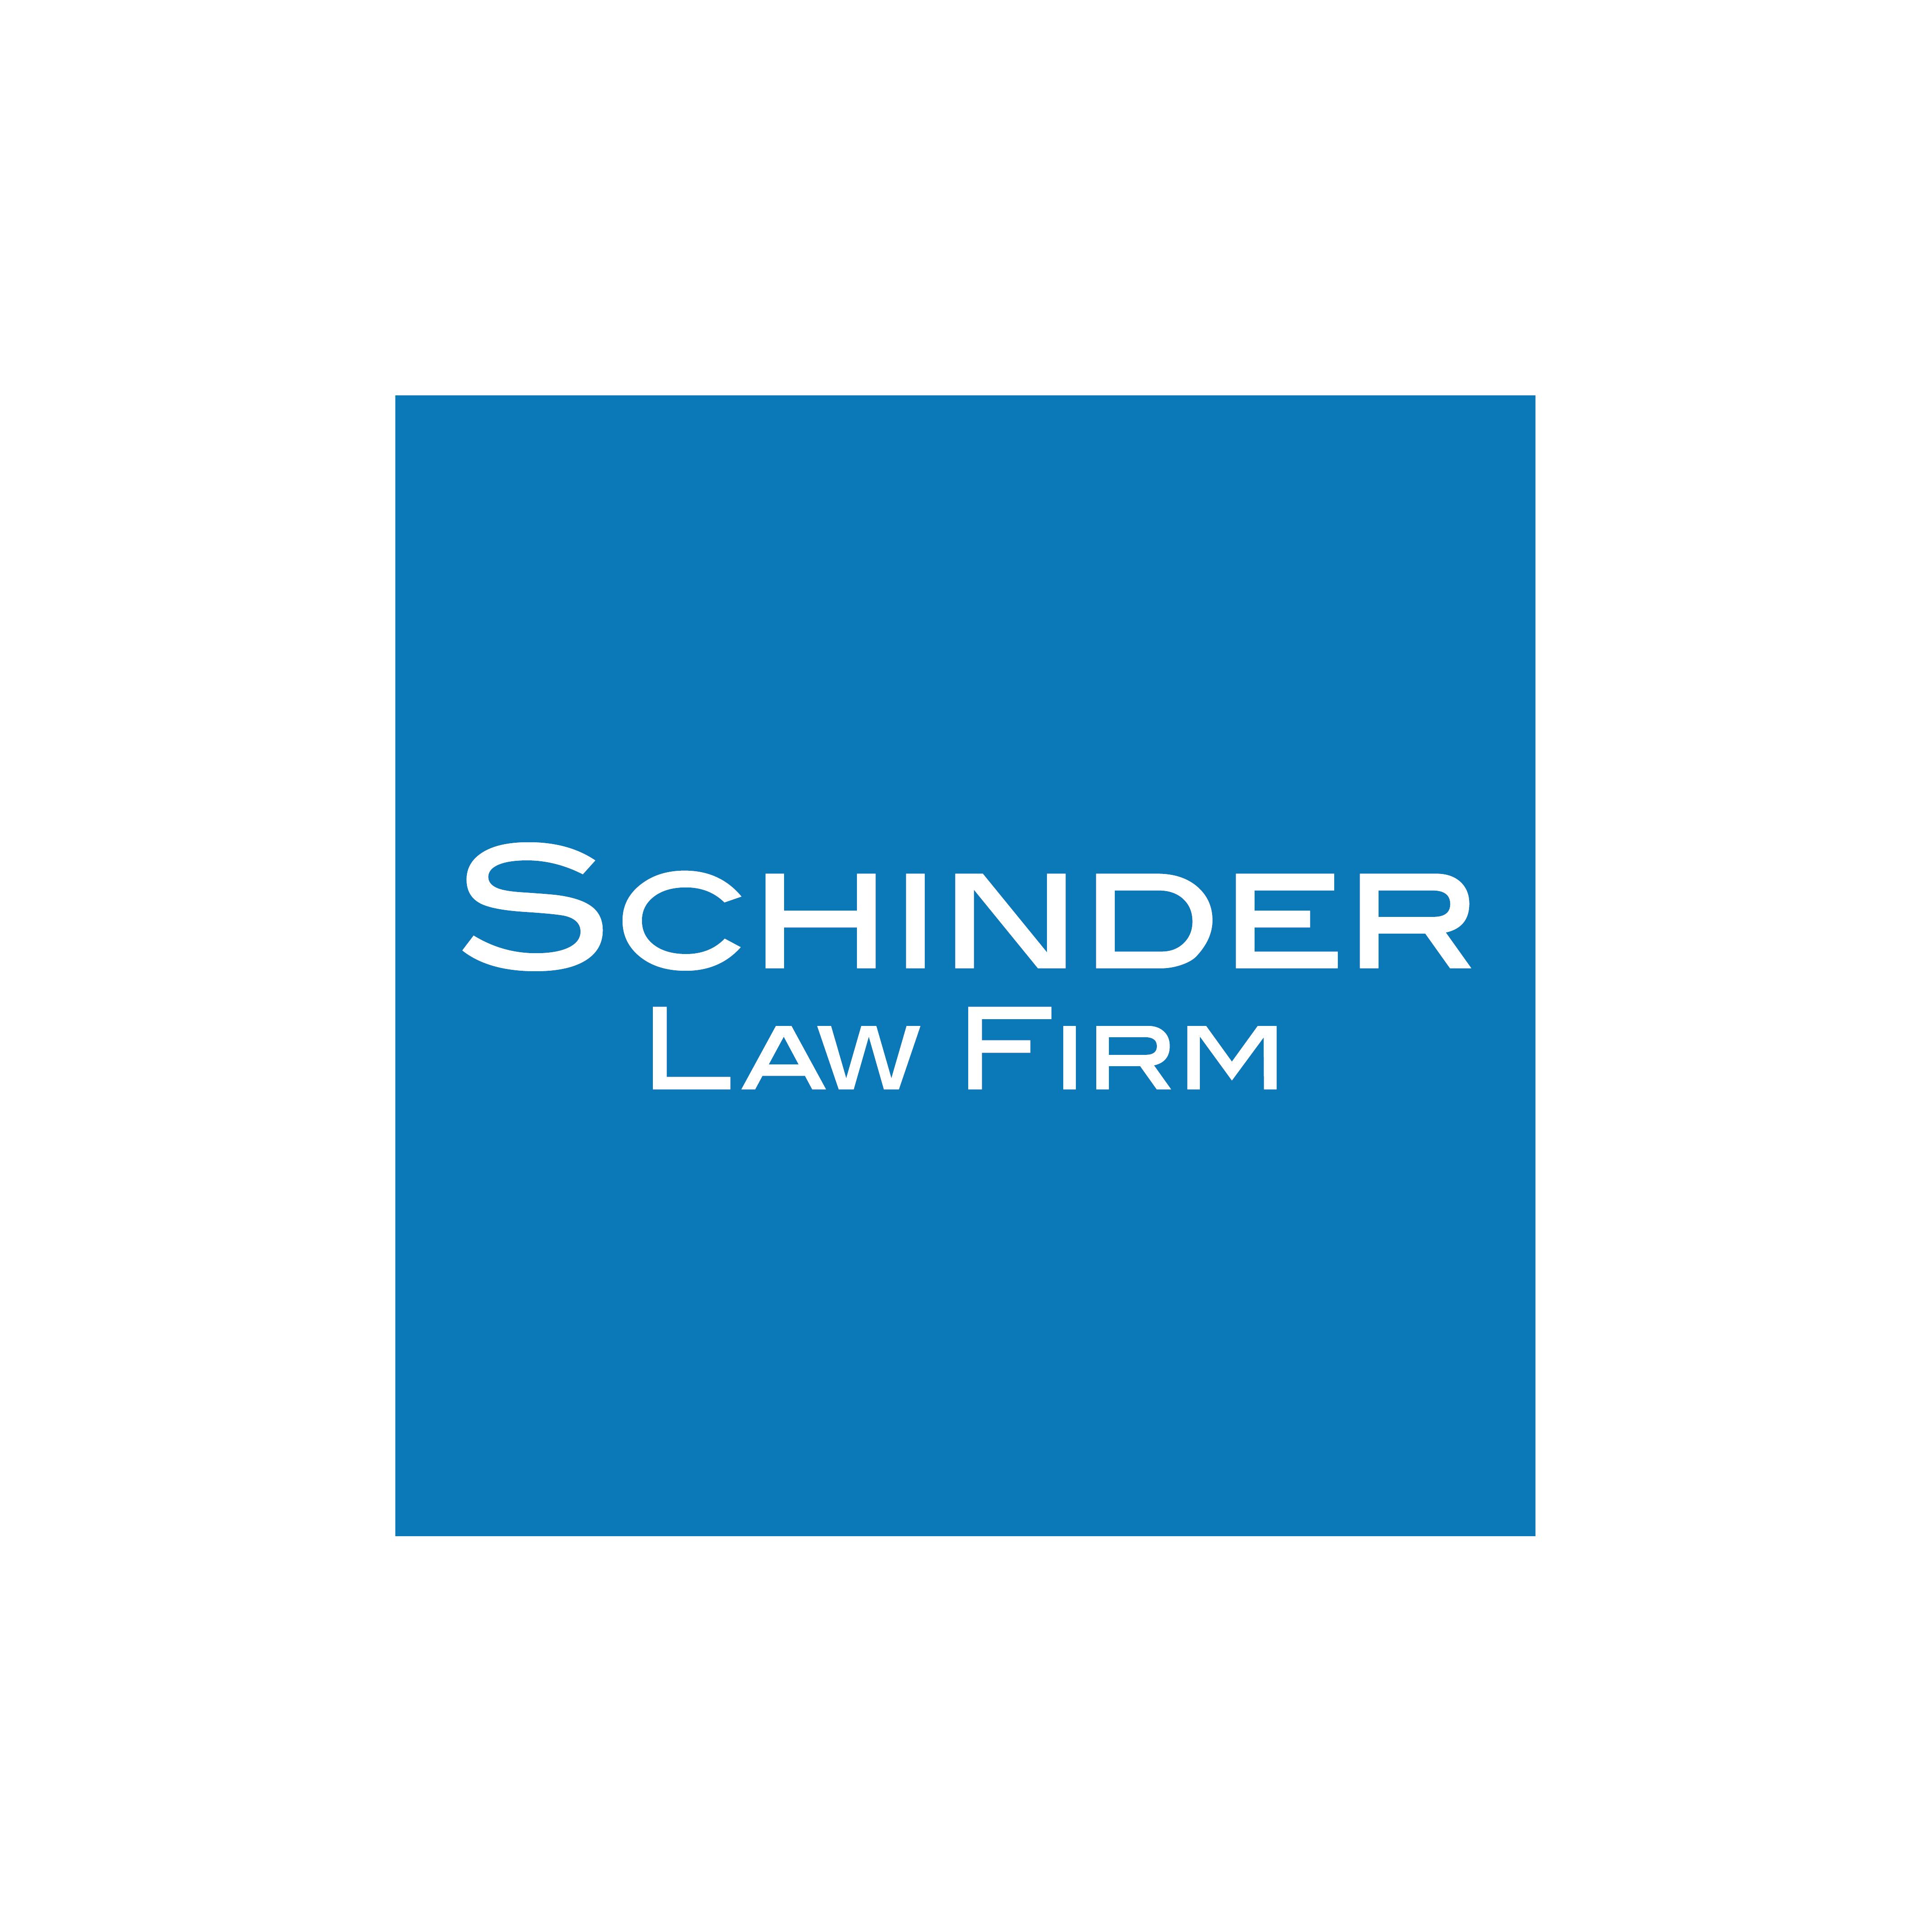 Schinder Law Firm